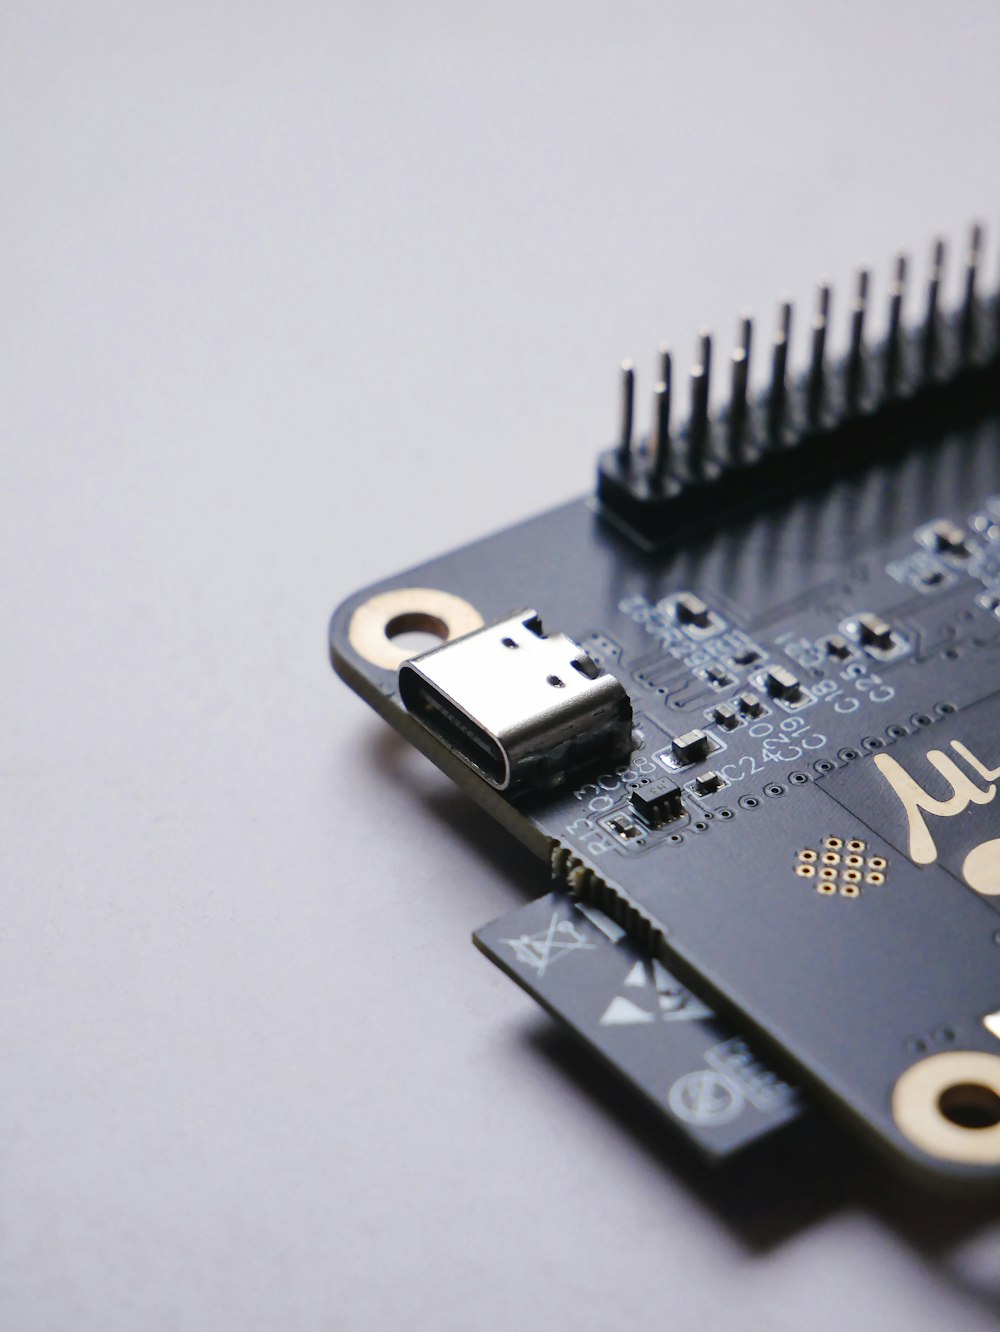 um close up de uma micro placa com um cabo USB ligado a ela